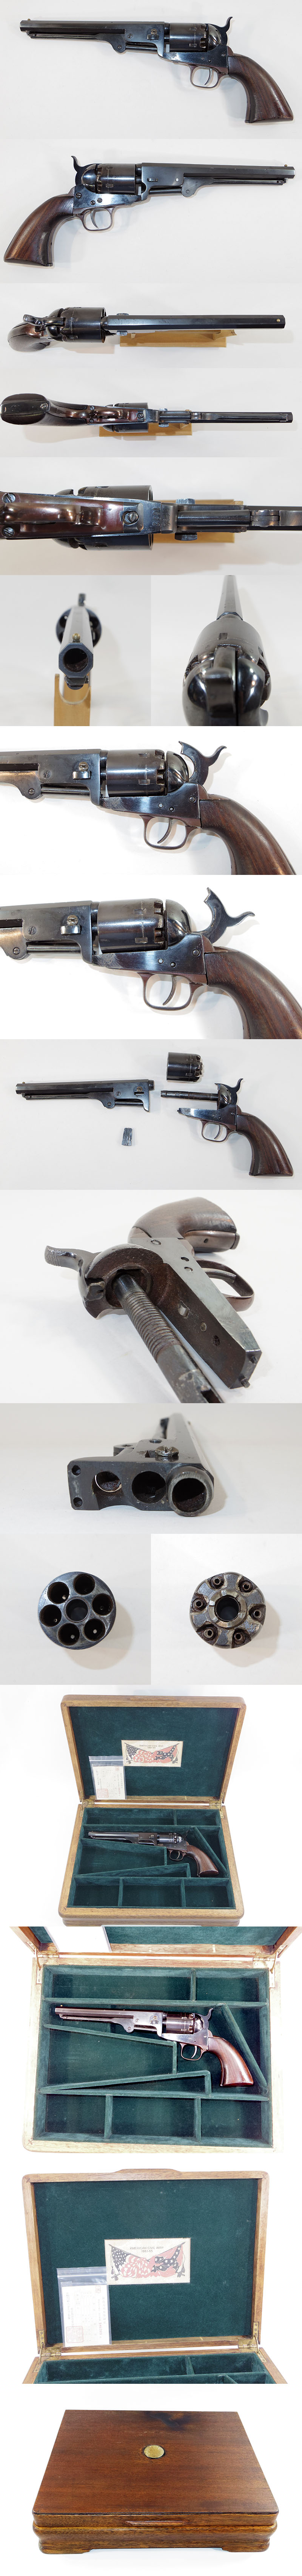 Colt51 navy (コルト51 ネービータイプ)　6連発リボルバー管打銃 各部分画像